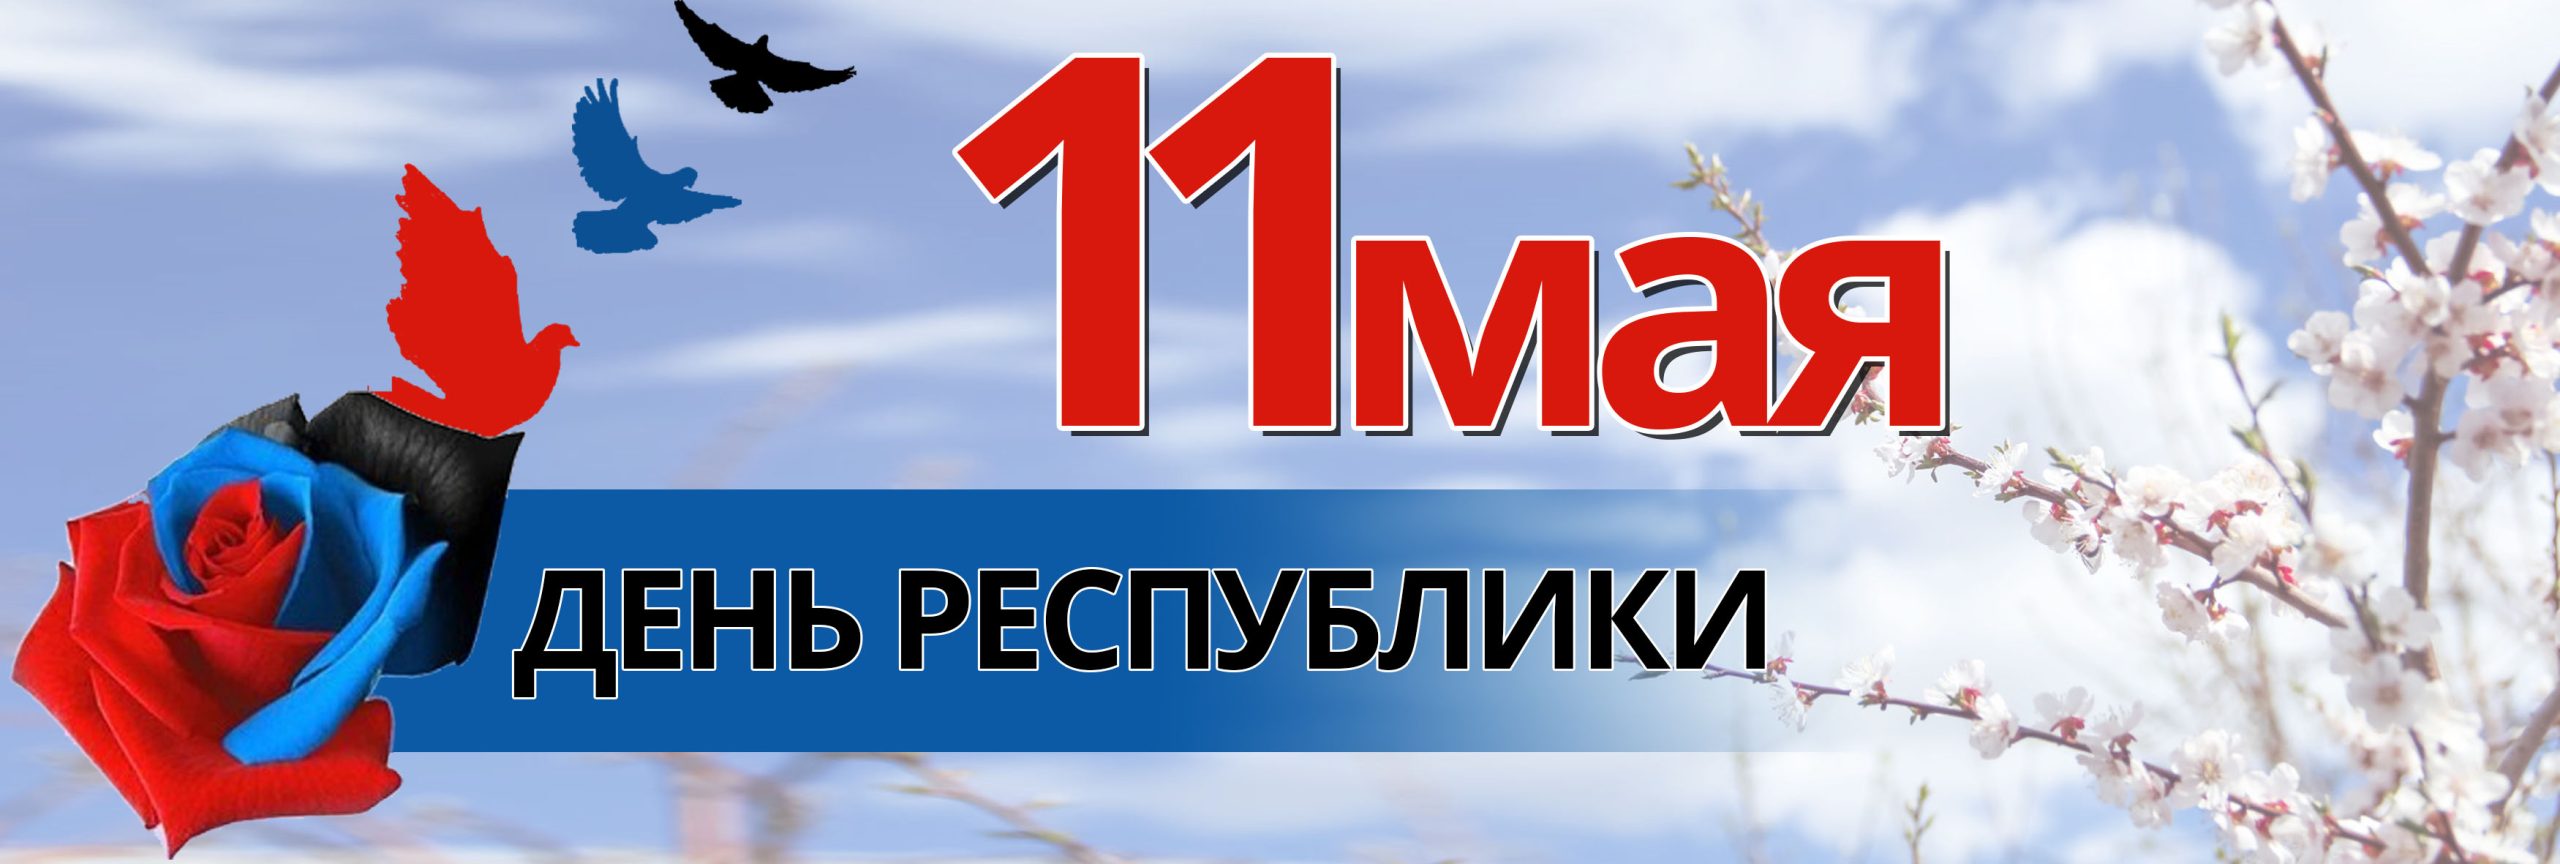 День Республики ДНР 11 мая поздравления